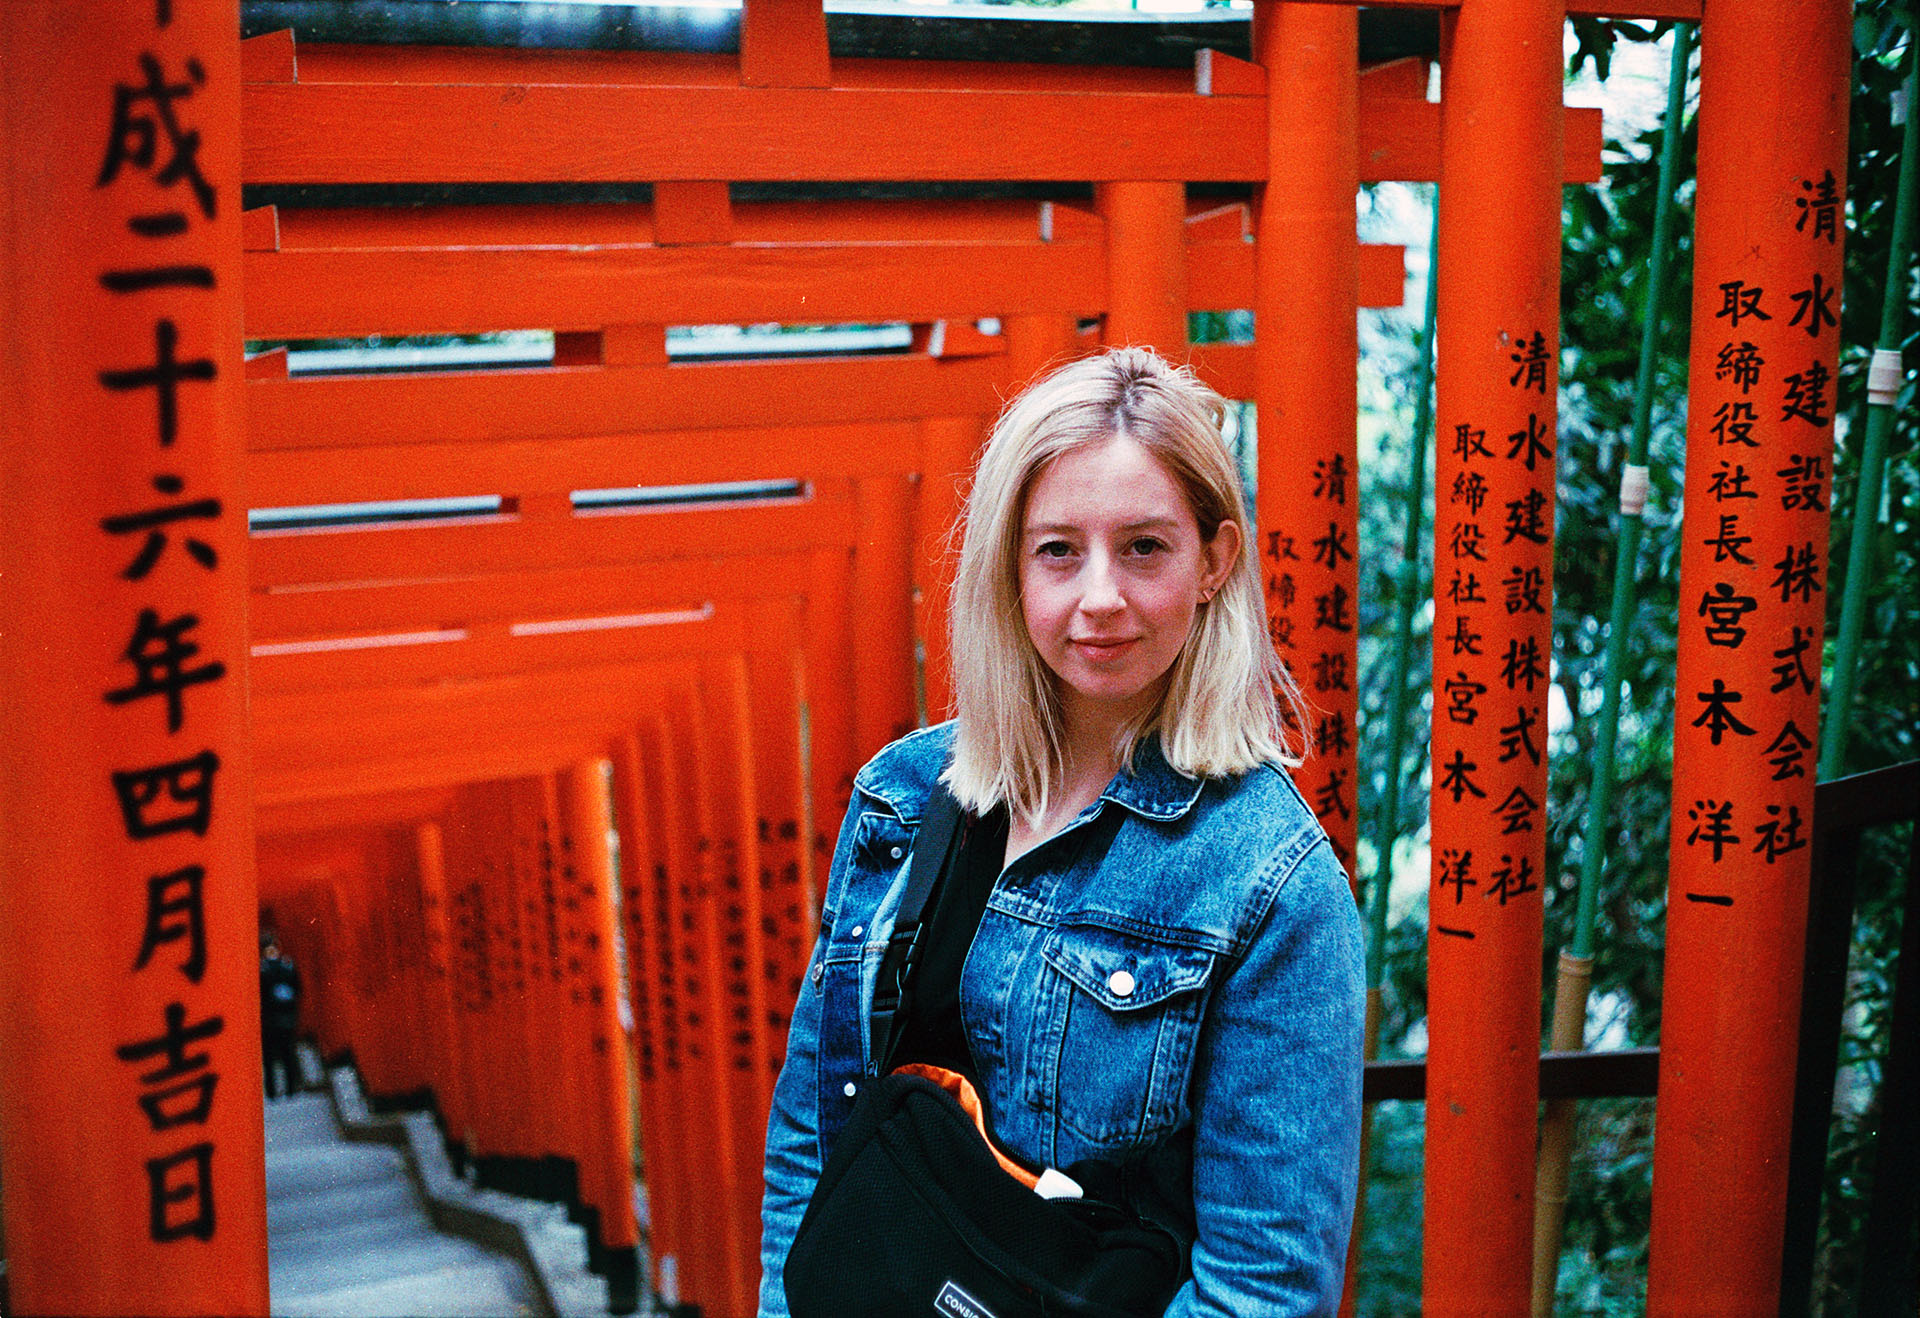 35mm Japan portrait